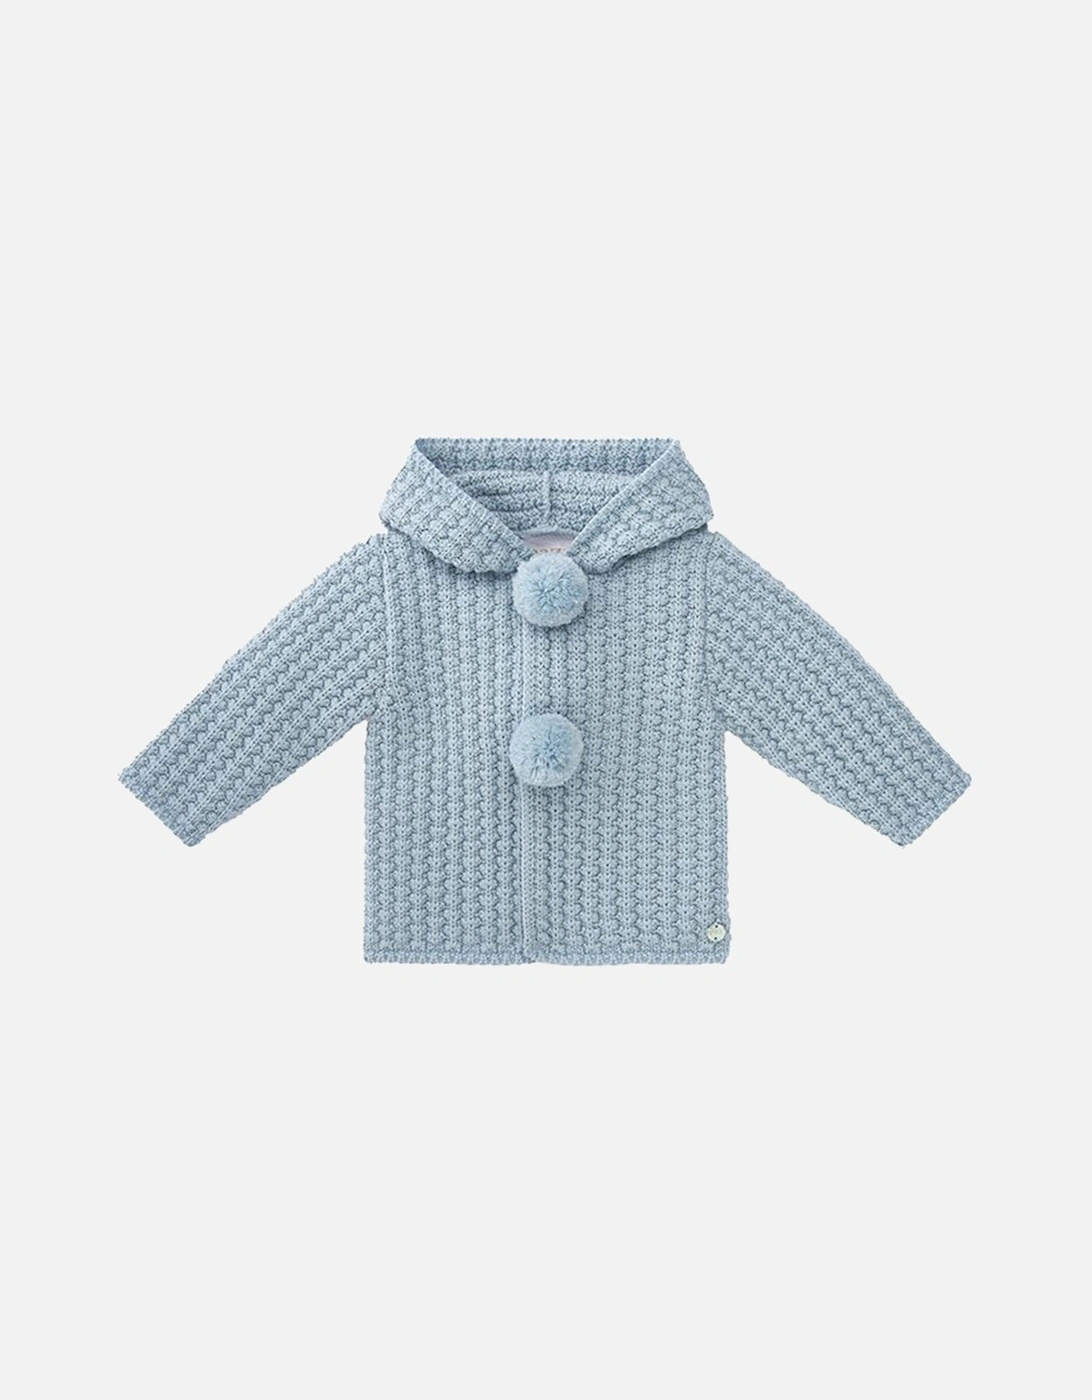 Paz Rodriguez Unisex Baby Knitted Coat Blue, 3 of 2